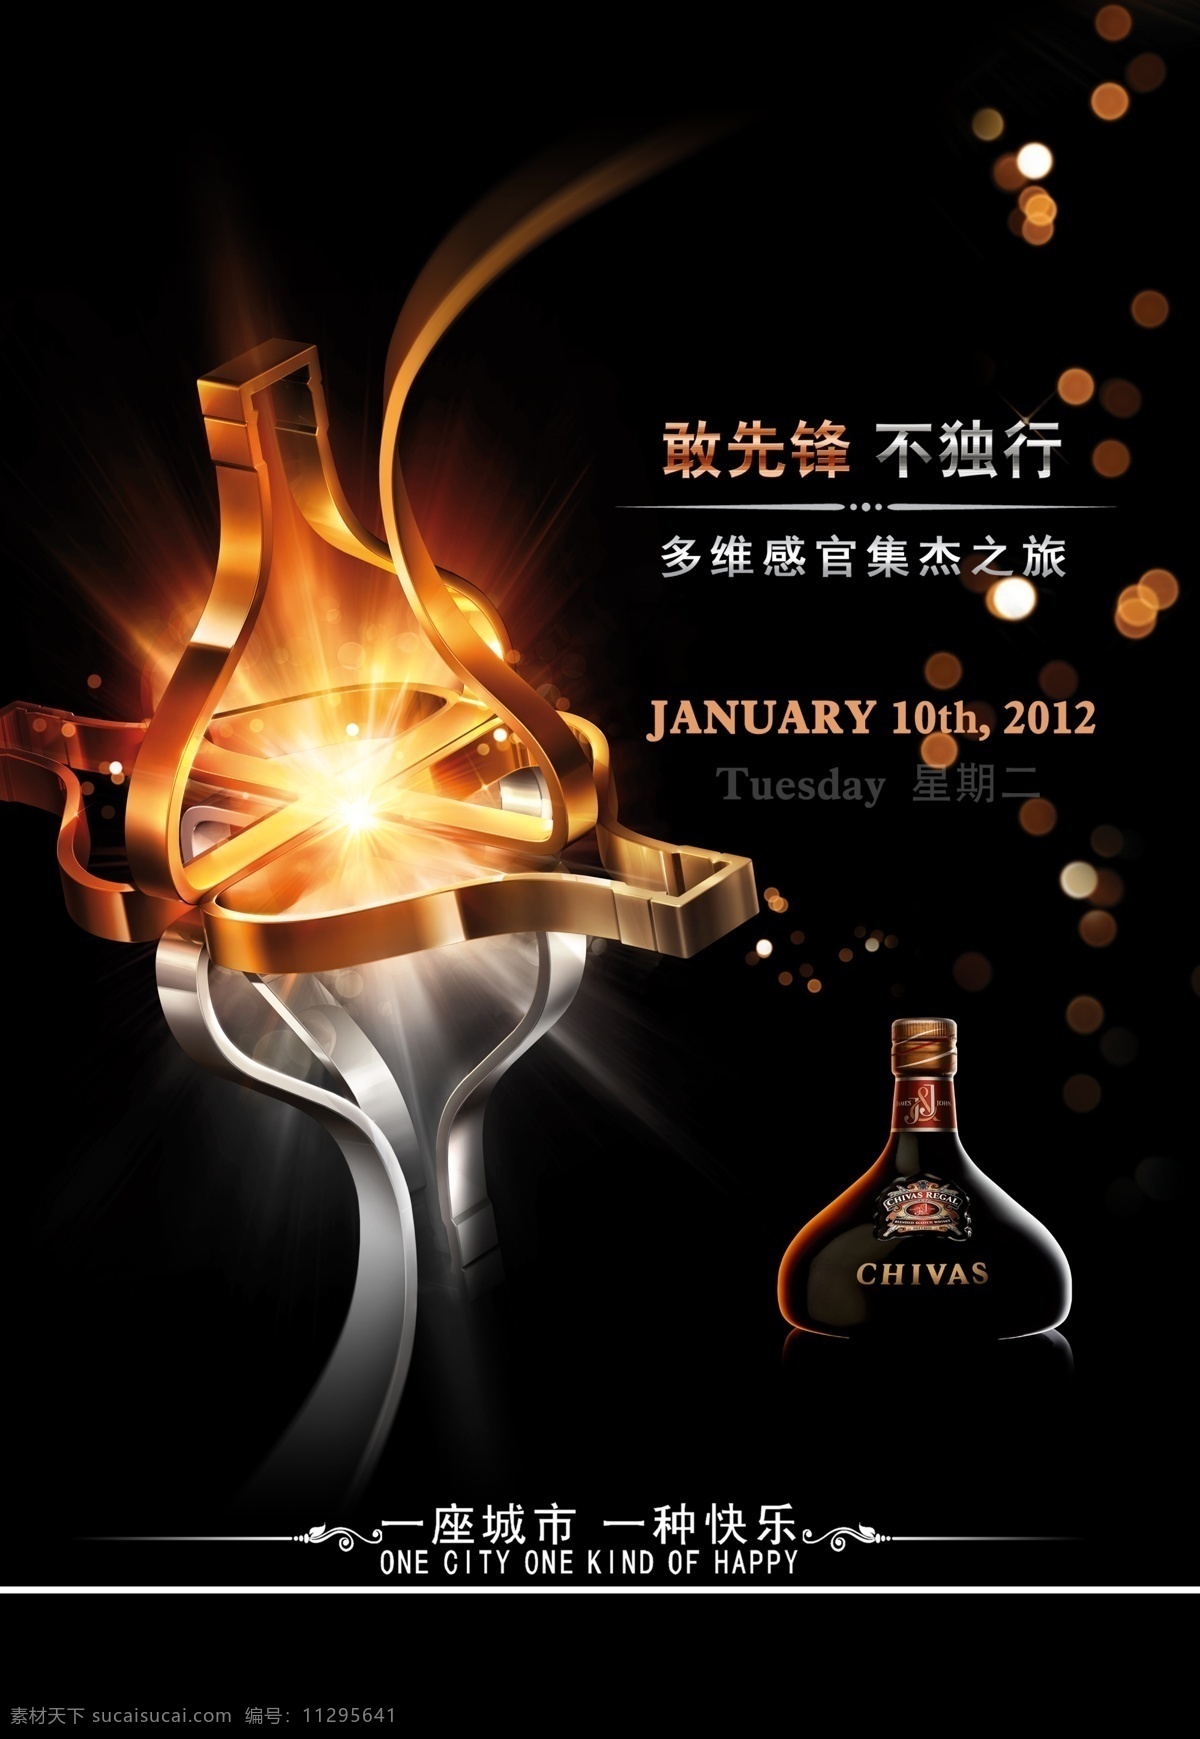 酒吧广告设计 中文字 英文字 洋酒 星光效果 花纹效果 红色发光效果 黑色渐变背景